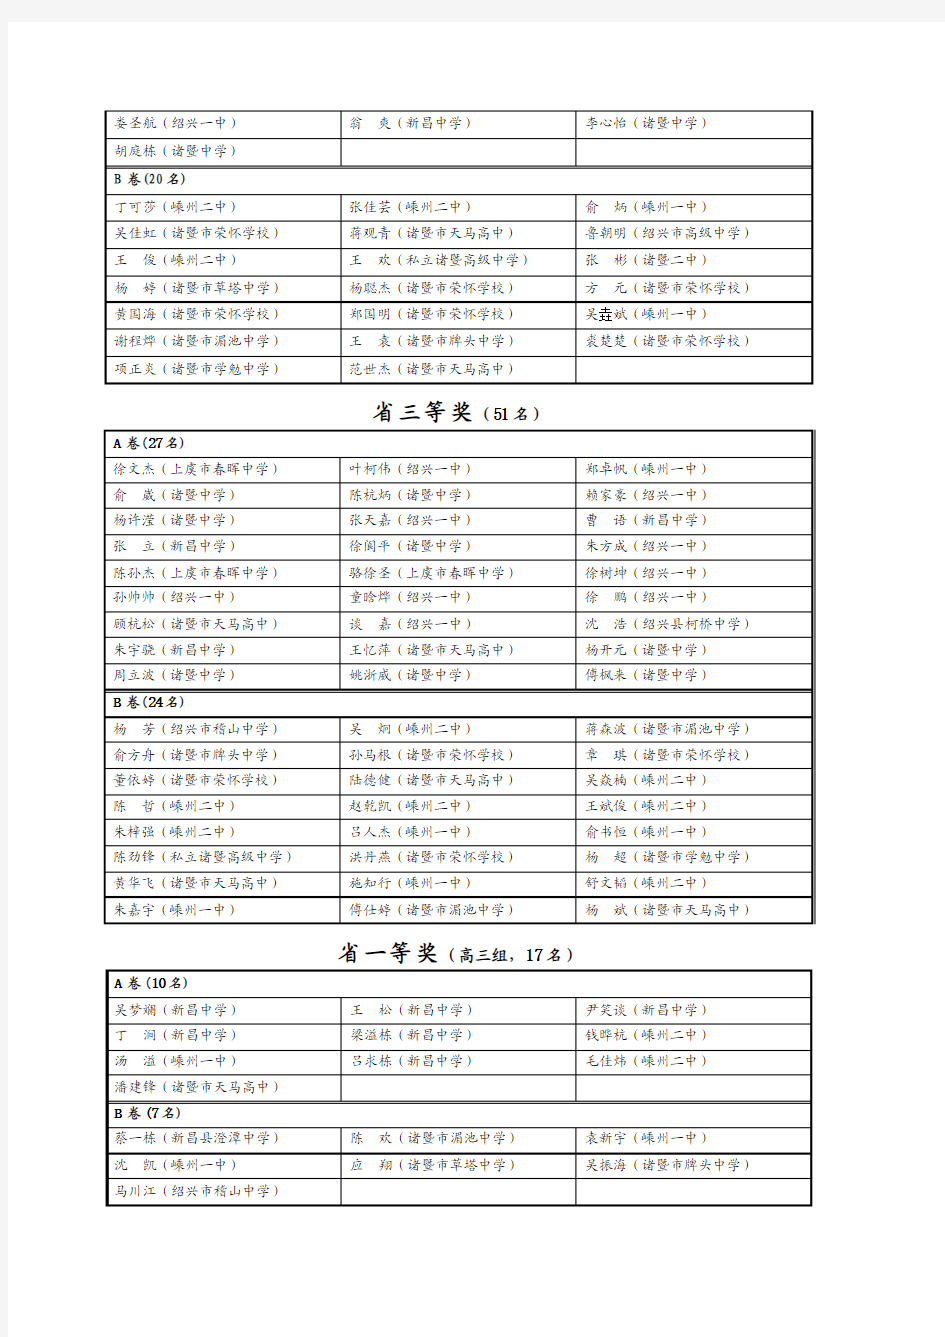 2010年浙江省高中数学竞赛获奖名单(绍兴市部分)